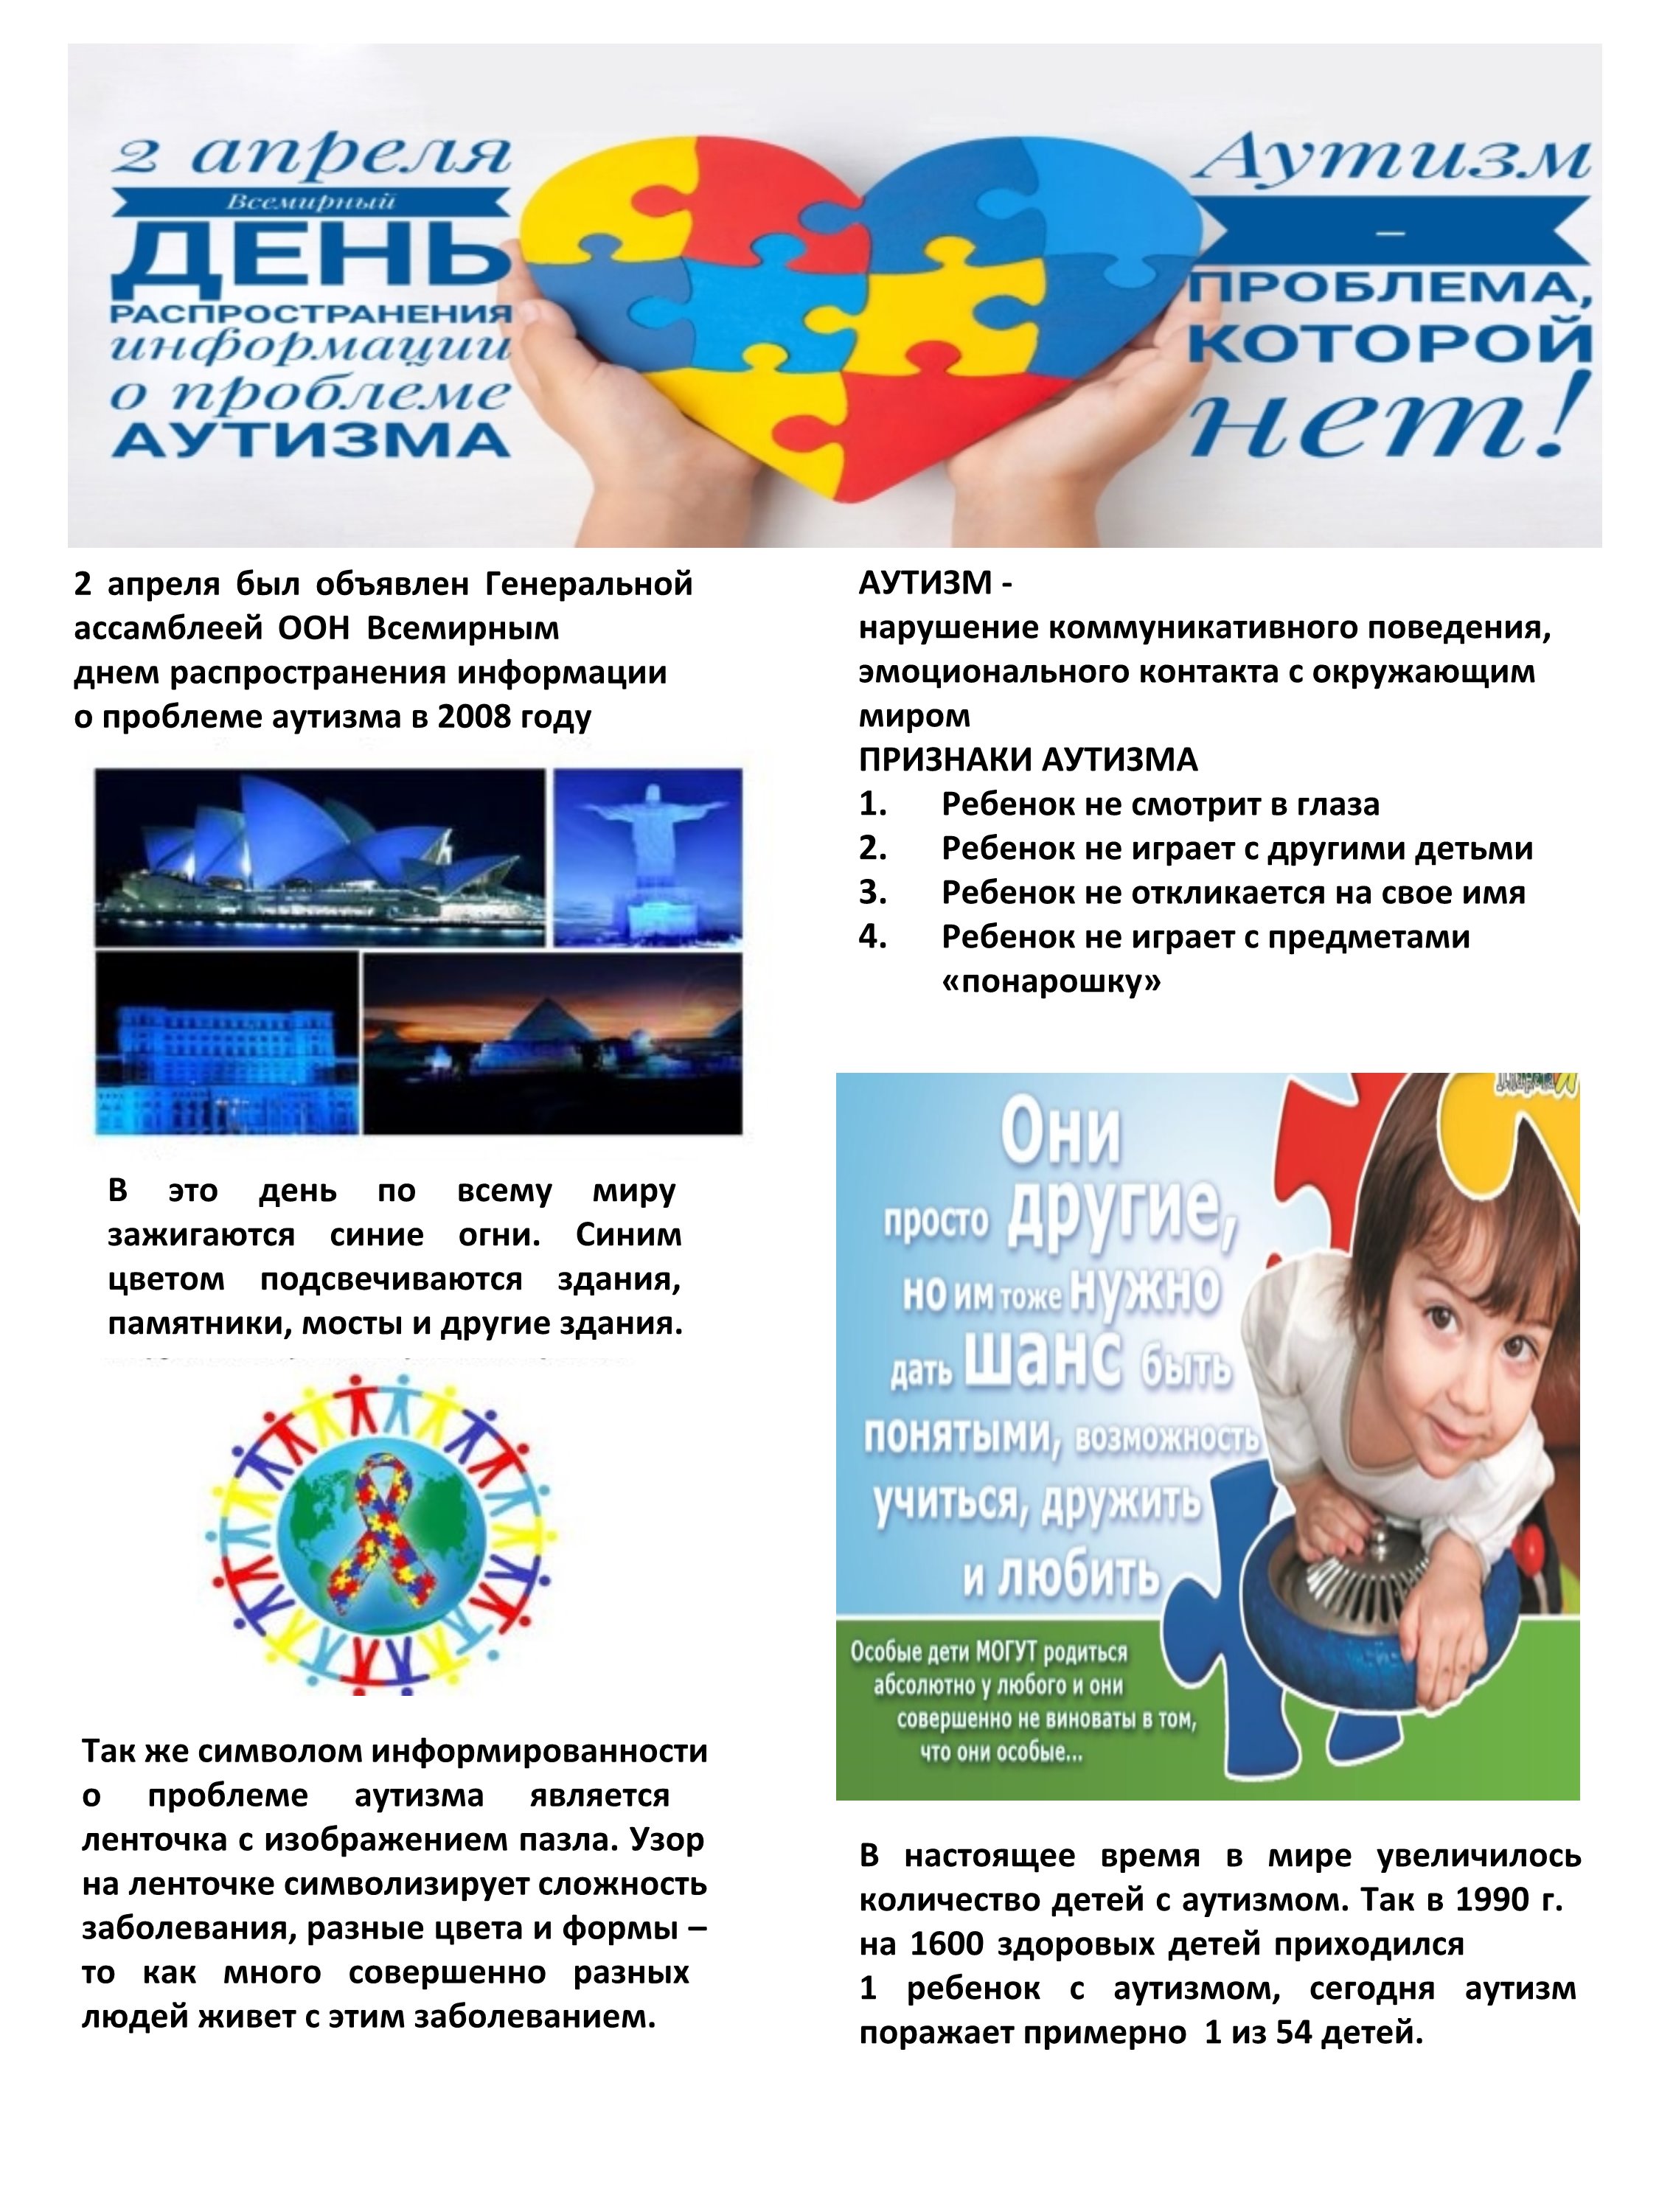 Всемирный день распространения информации о проблеме аутизма. Всемирный день аутизма. Информация об аутизме. 2 Апреля день аутизма.